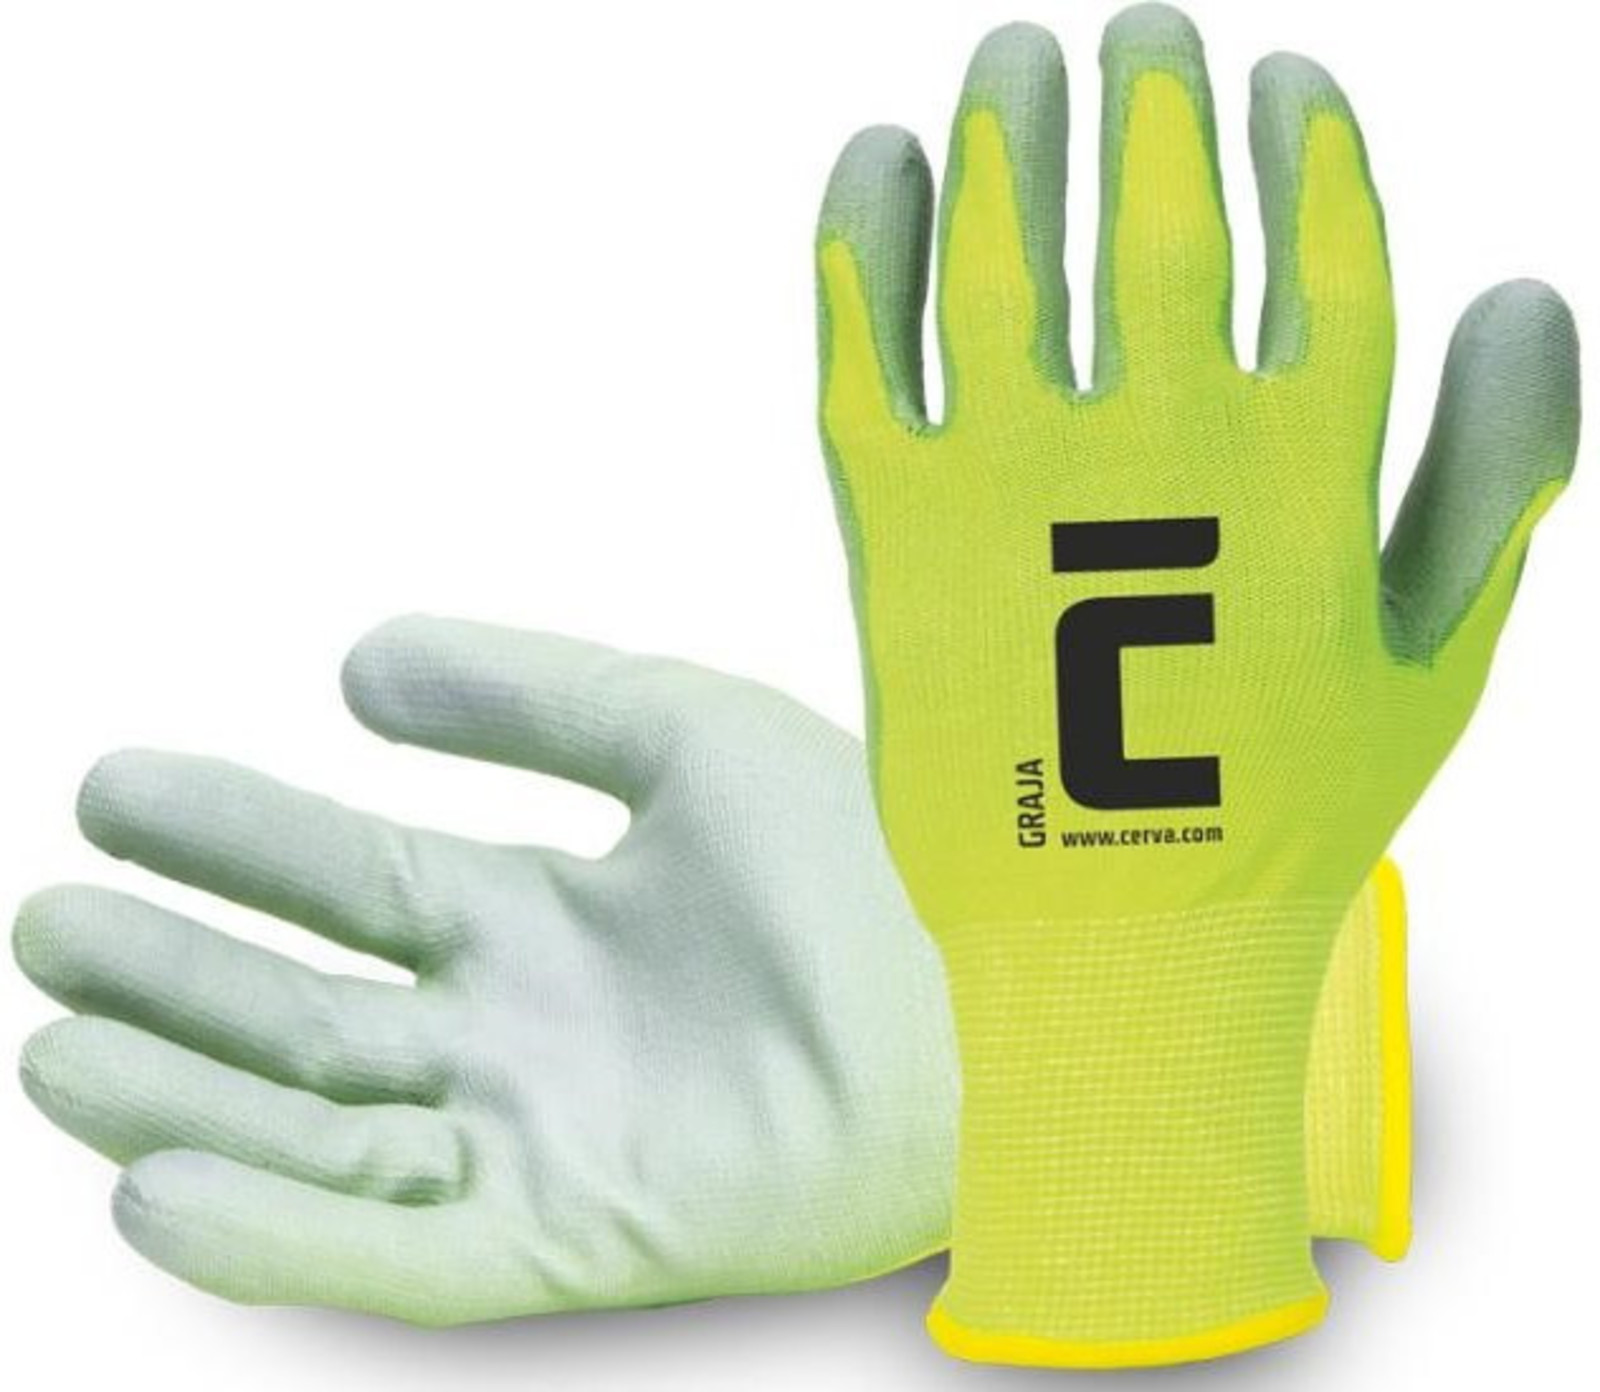 Pracovné rukavice Cerva Graja - veľkosť: 6/XS, farba: žltá